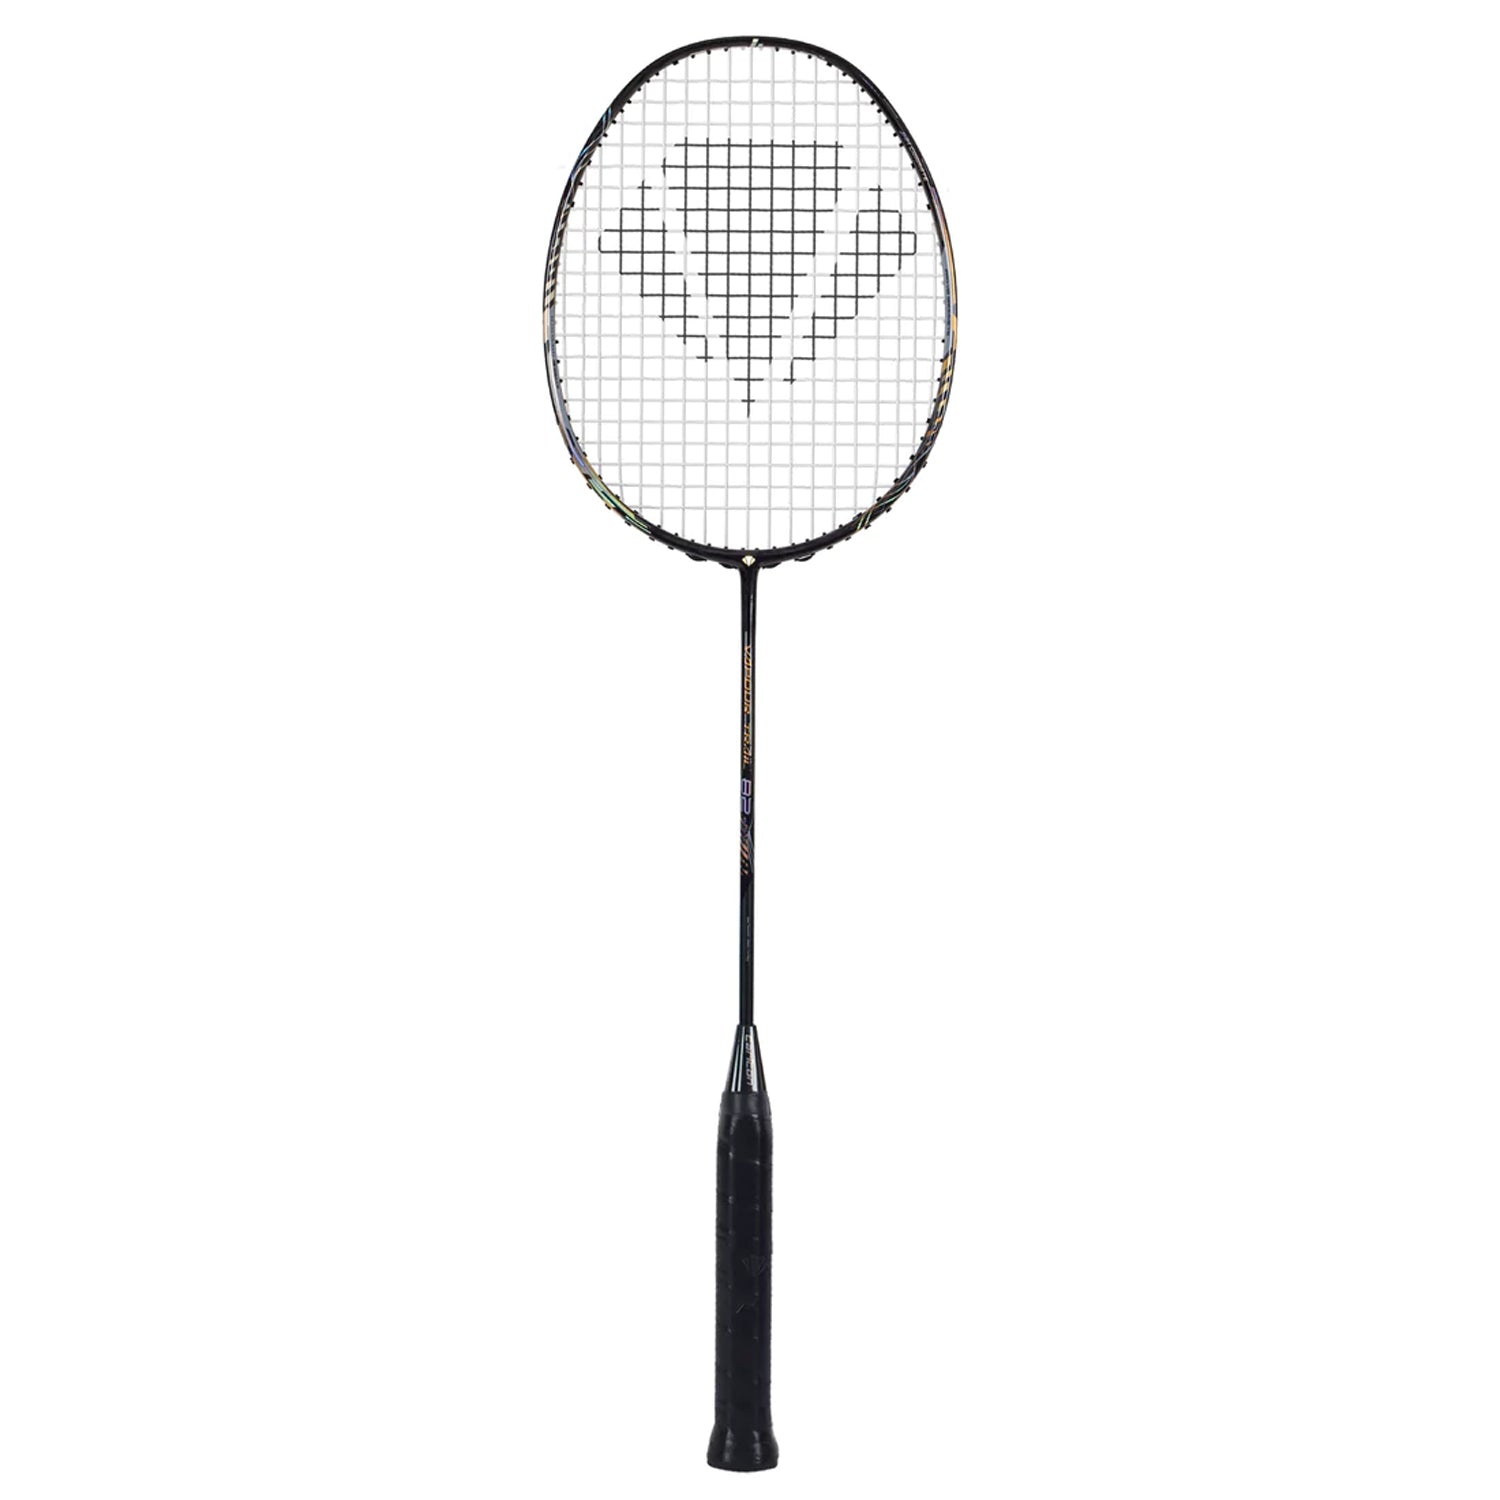 Carlton Vapour Trail 82 Pyrite Unstrung Badminton Racquet, G6- Black - Best Price online Prokicksports.com